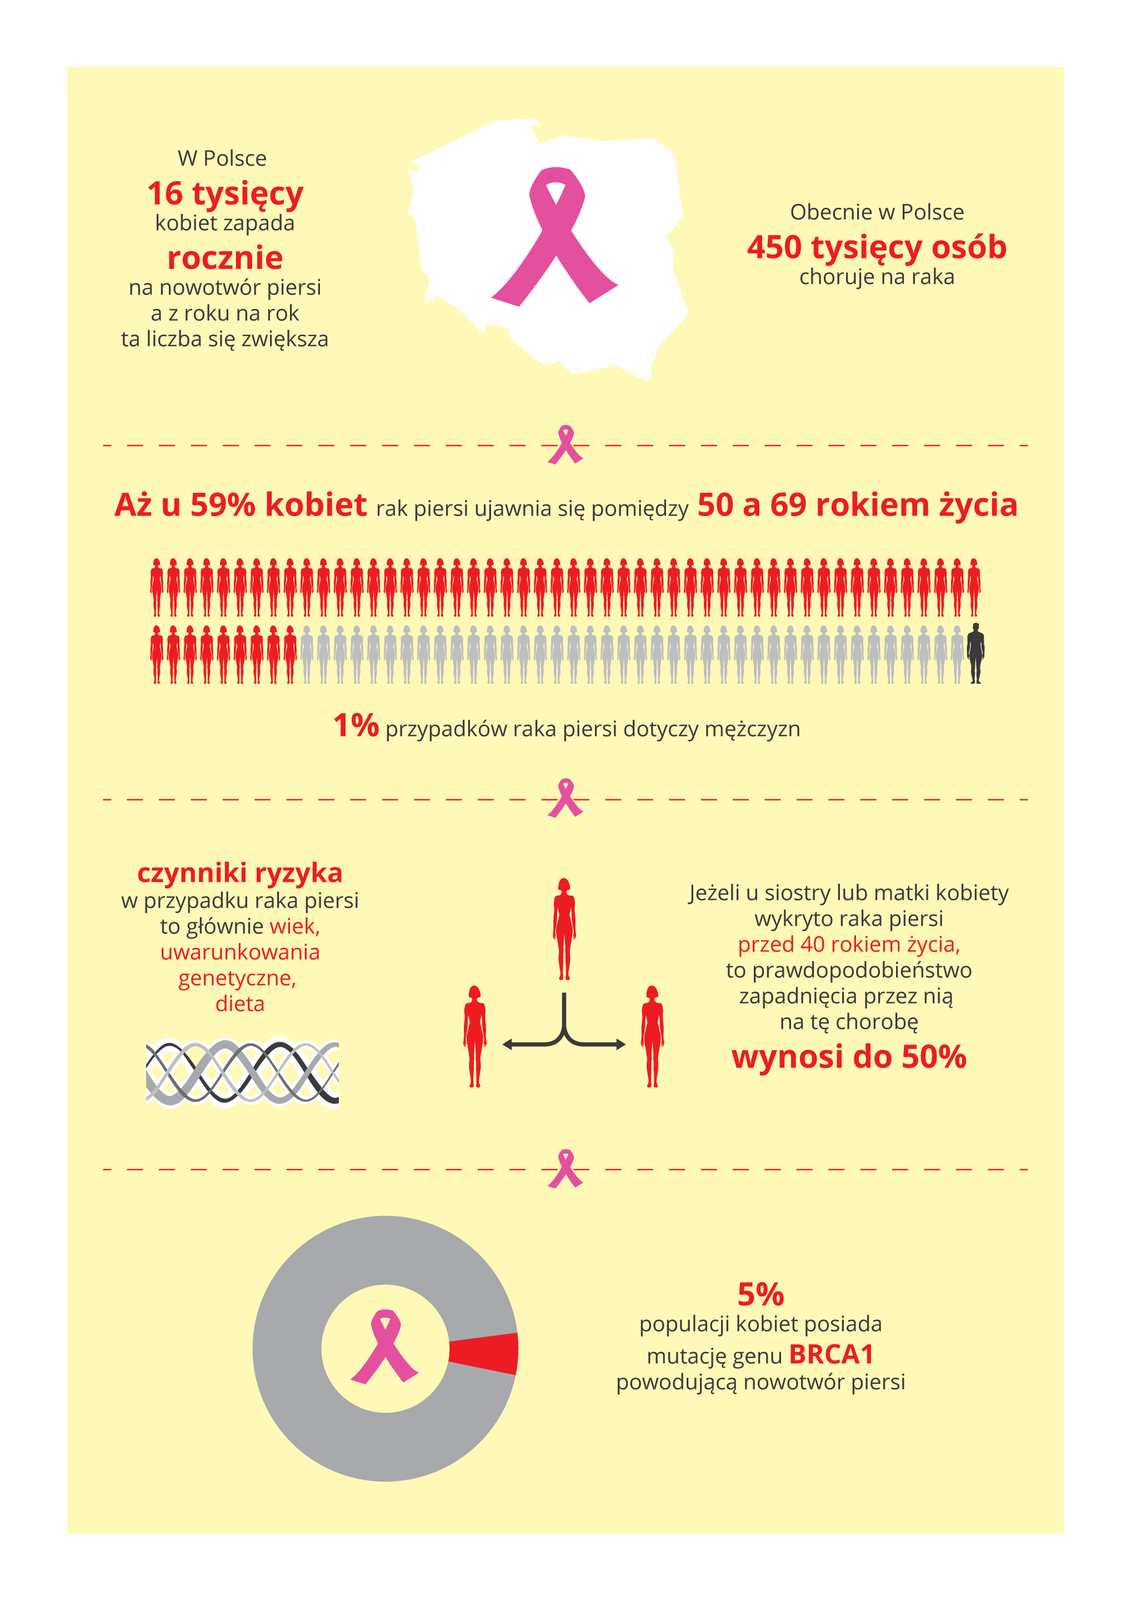 Ilustracja przedstawia na blado różowym tle informacje graficzne i tekstowe o nowotworze piersi u kobiet w Polsce. Użyto symbolu różowej wstążki, oznaczającej raka piersi. Od góry opisano: ilość zachorowań, procentową zapadalność na tę chorobę, czynniki ryzyka i na końcu szary wykres pierścieniowy, obrazujący procent populacji kobiet z mutacją genu BRCA 1, powodującą raka piersi. W Polsce 16000 kobiet rocznie zapada na nowotwór piersi.Obecnie choruje 450 000 kobietRak piersi ujawnia się u 59% kobiet między 50 a 69 rokiem życiaNa raka piersi choruje 1% mężczyznRyzyko zachorowania wynosi 50%, jeżeli siostra lub matka kobiety zachorowały przed 40 rokiem życia.